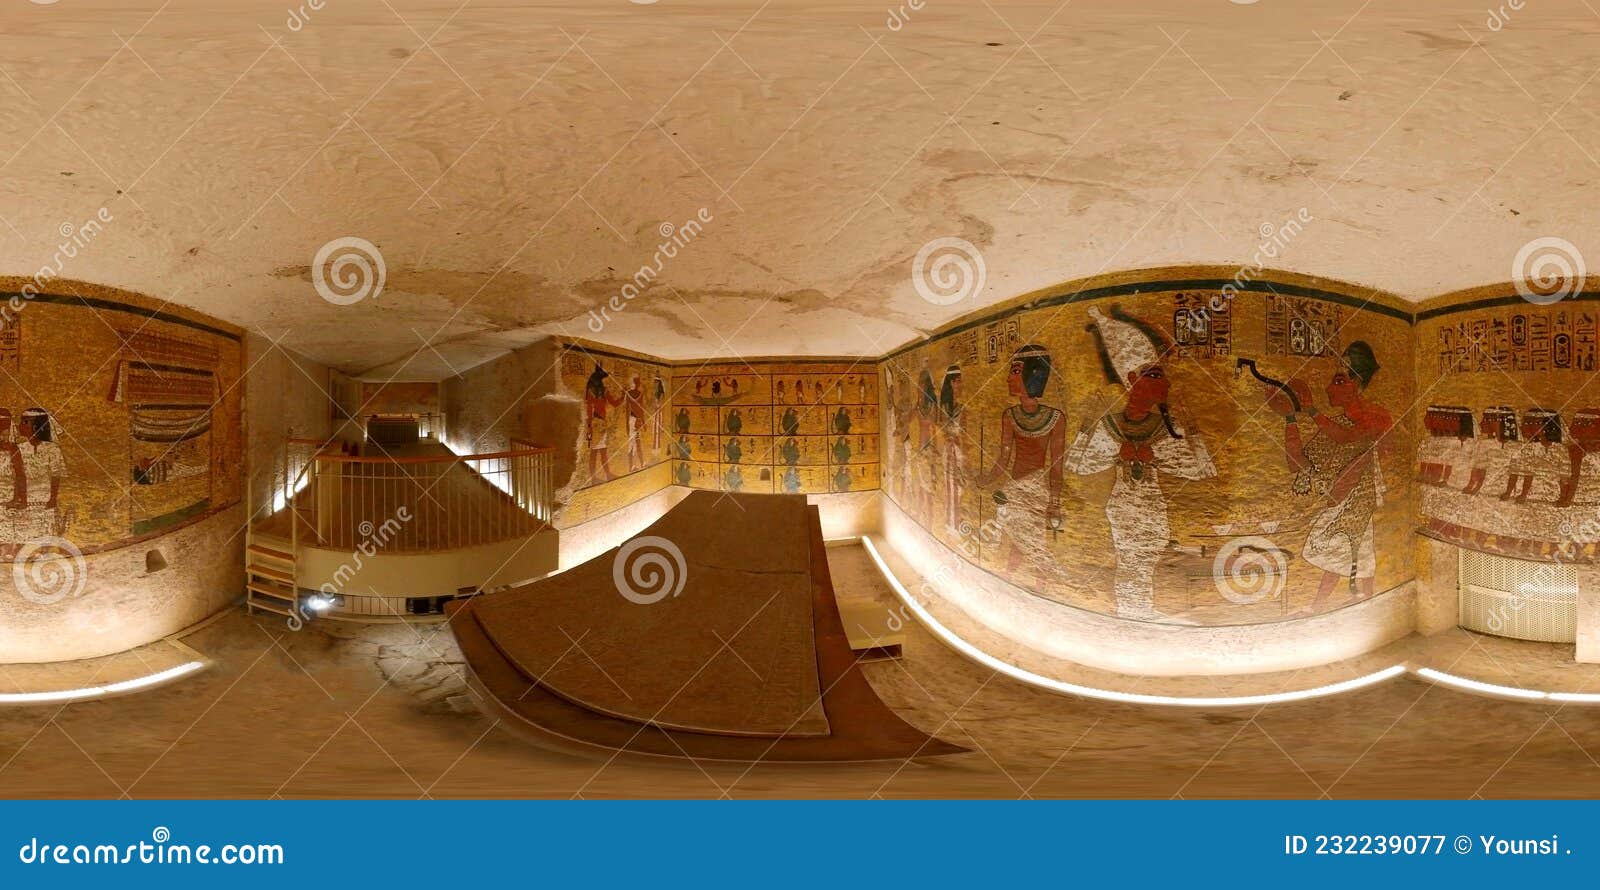 tutankhamun tomb panorama 360 vr